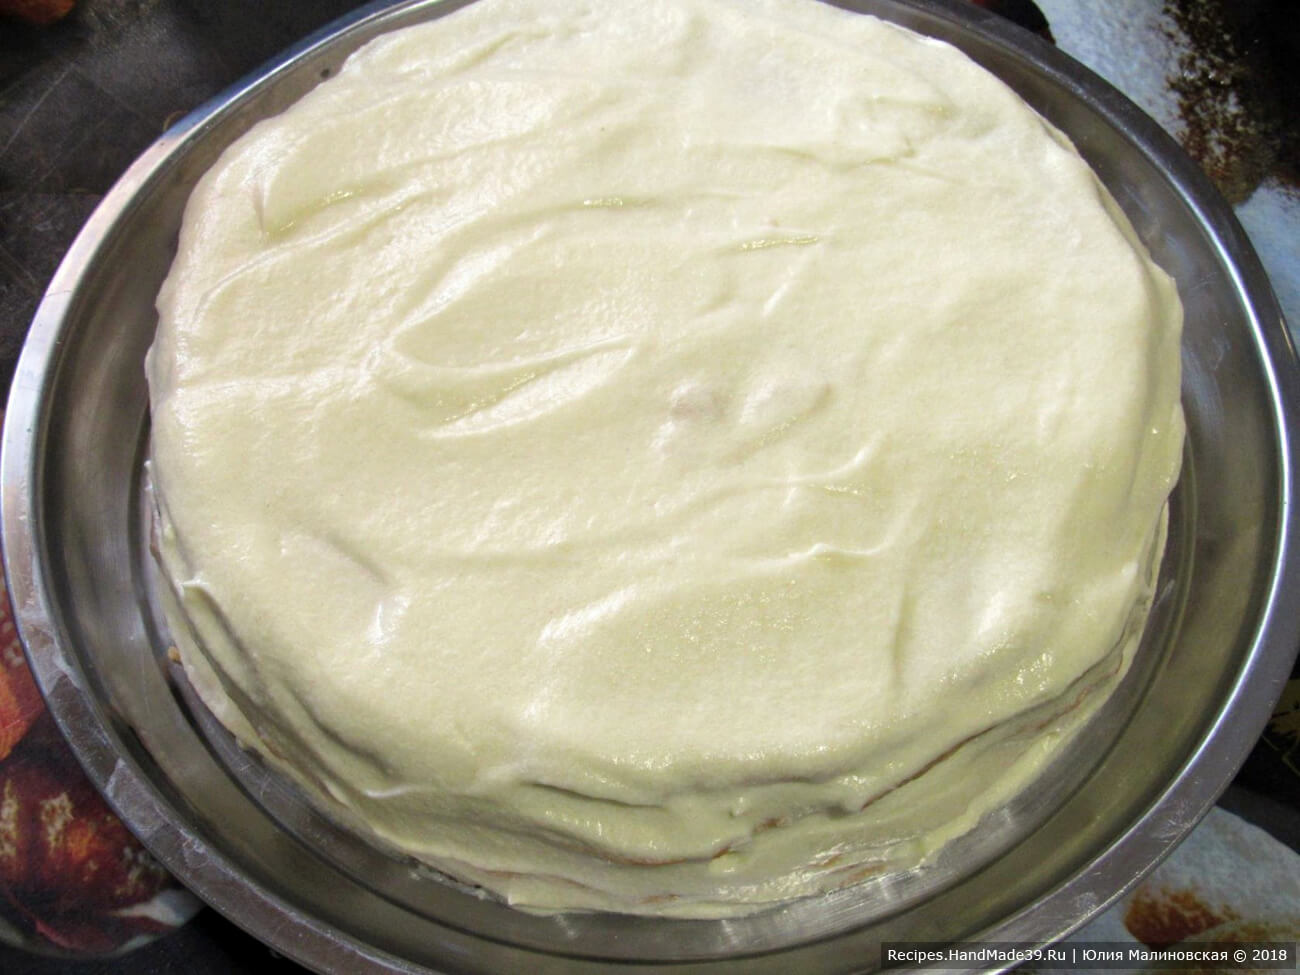 Остатками крема обмазать торт со всех сторон